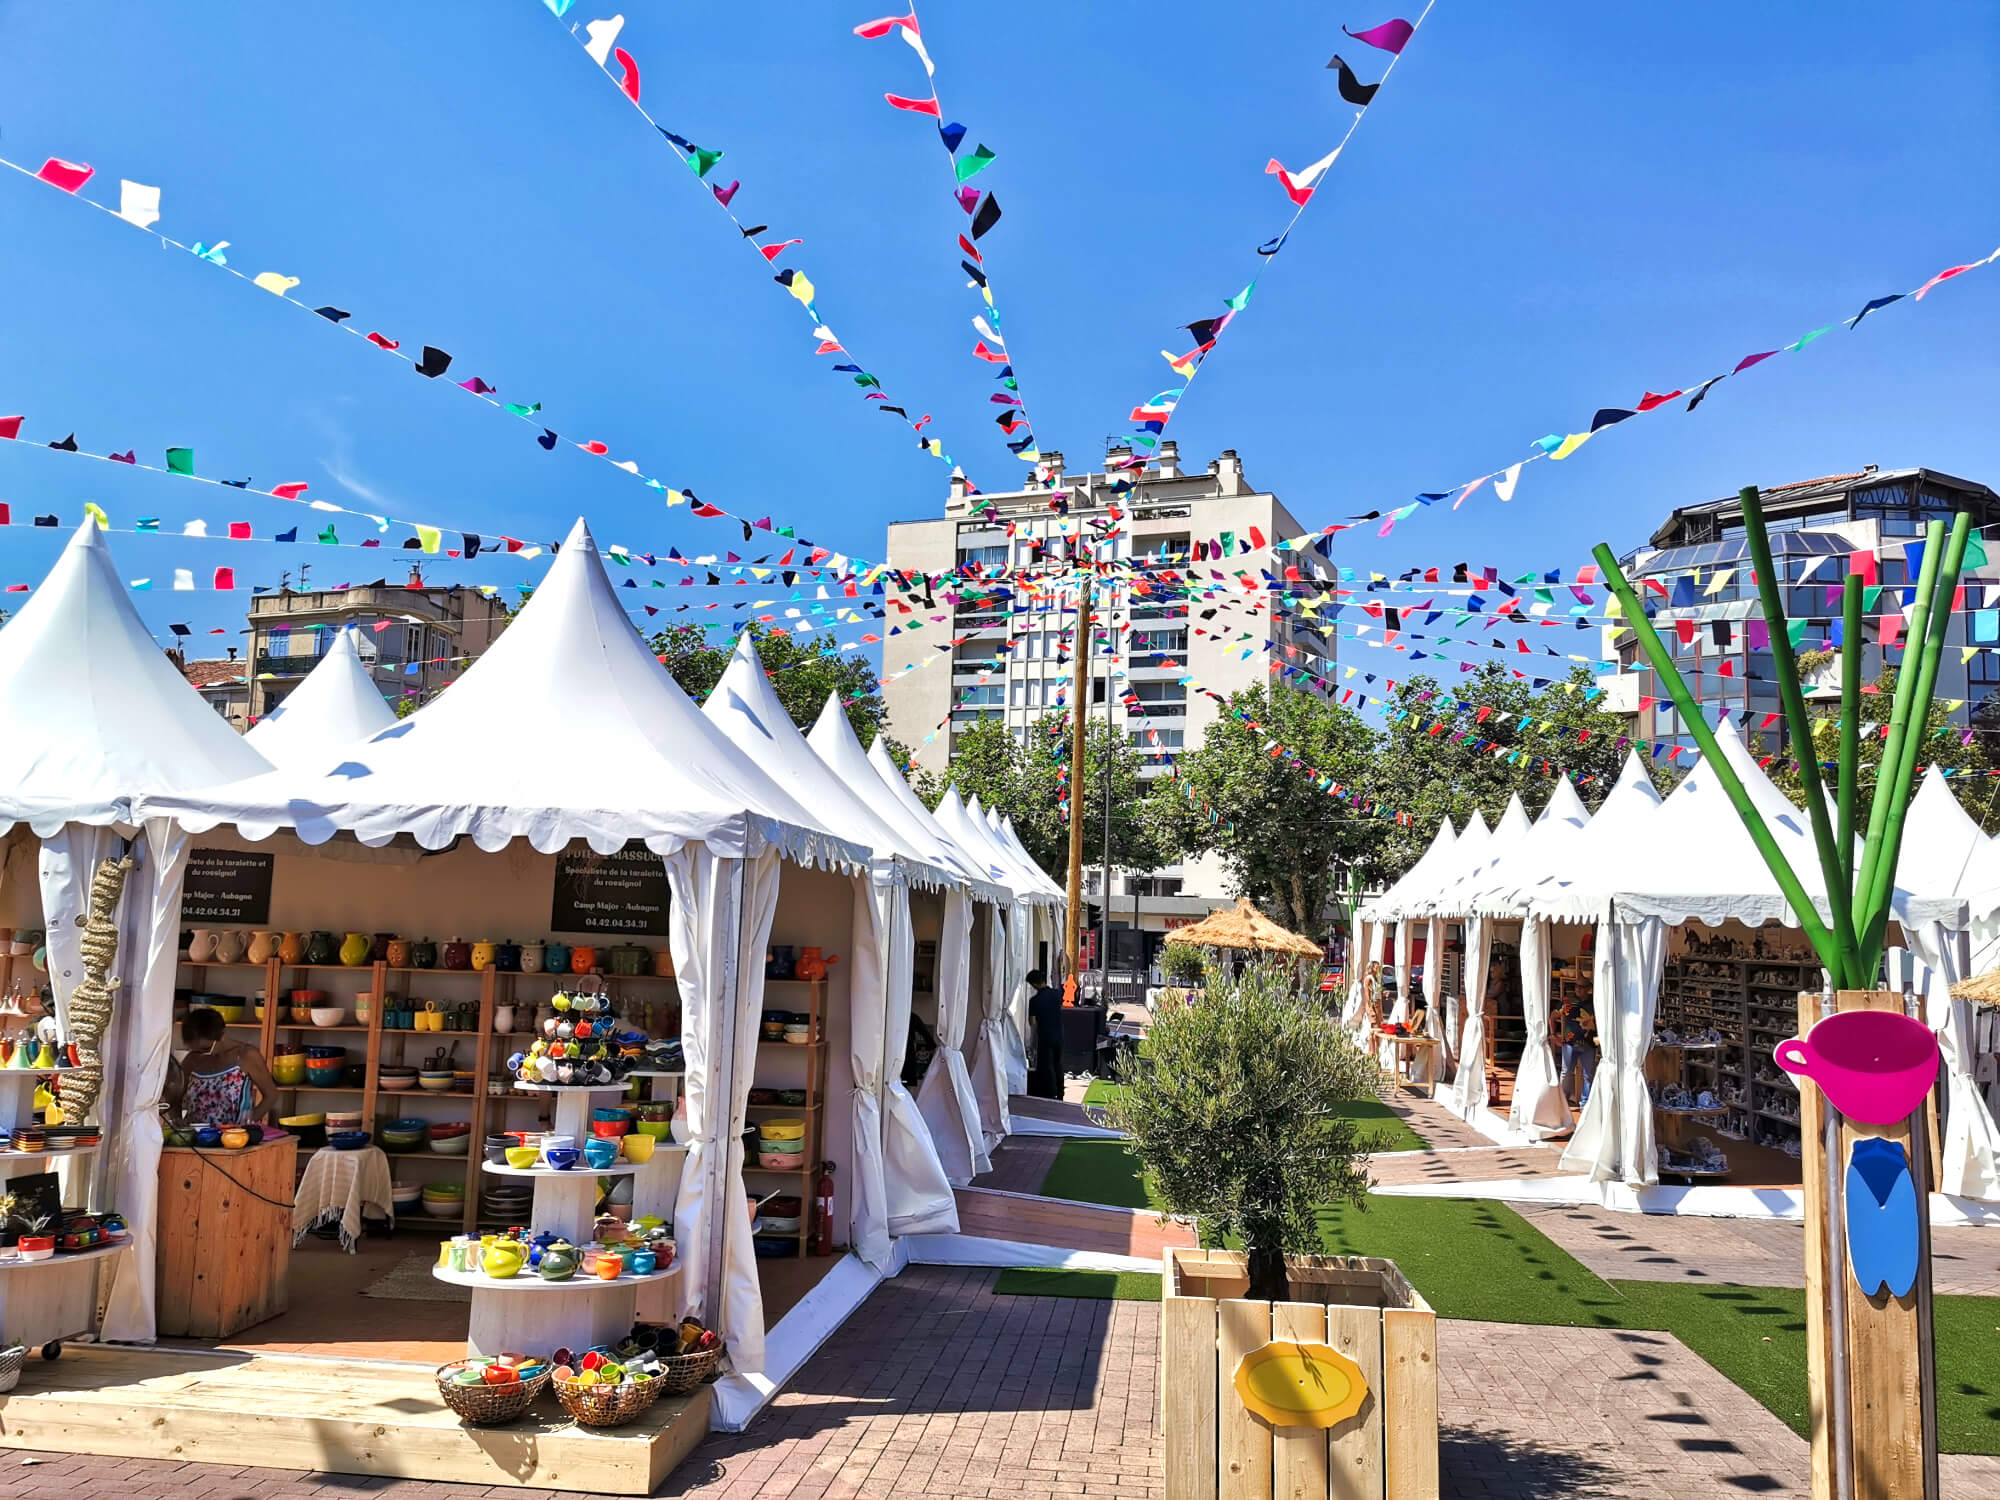 Location vente de tentes pagodes pour votre événement